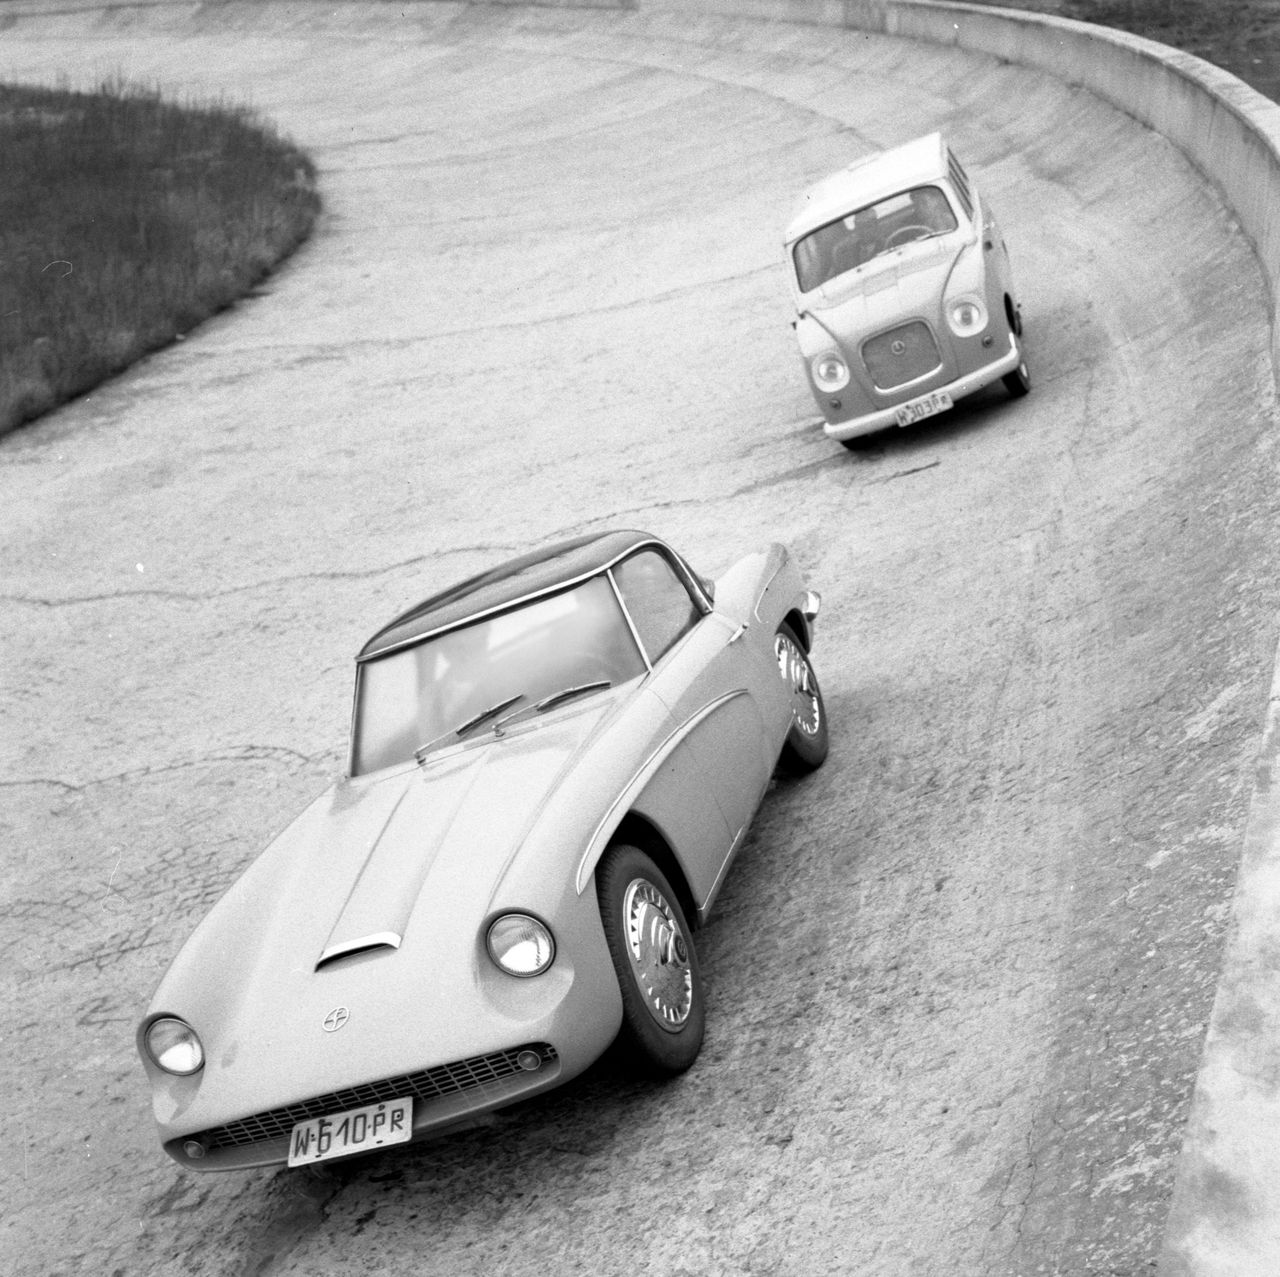 Warszawa, 01.05.1960. Samochod Syrena Sport; w tle Syrena Mikrobus (Syrena Kombi). Fot. Zbyszko Siemaszko / FORUM